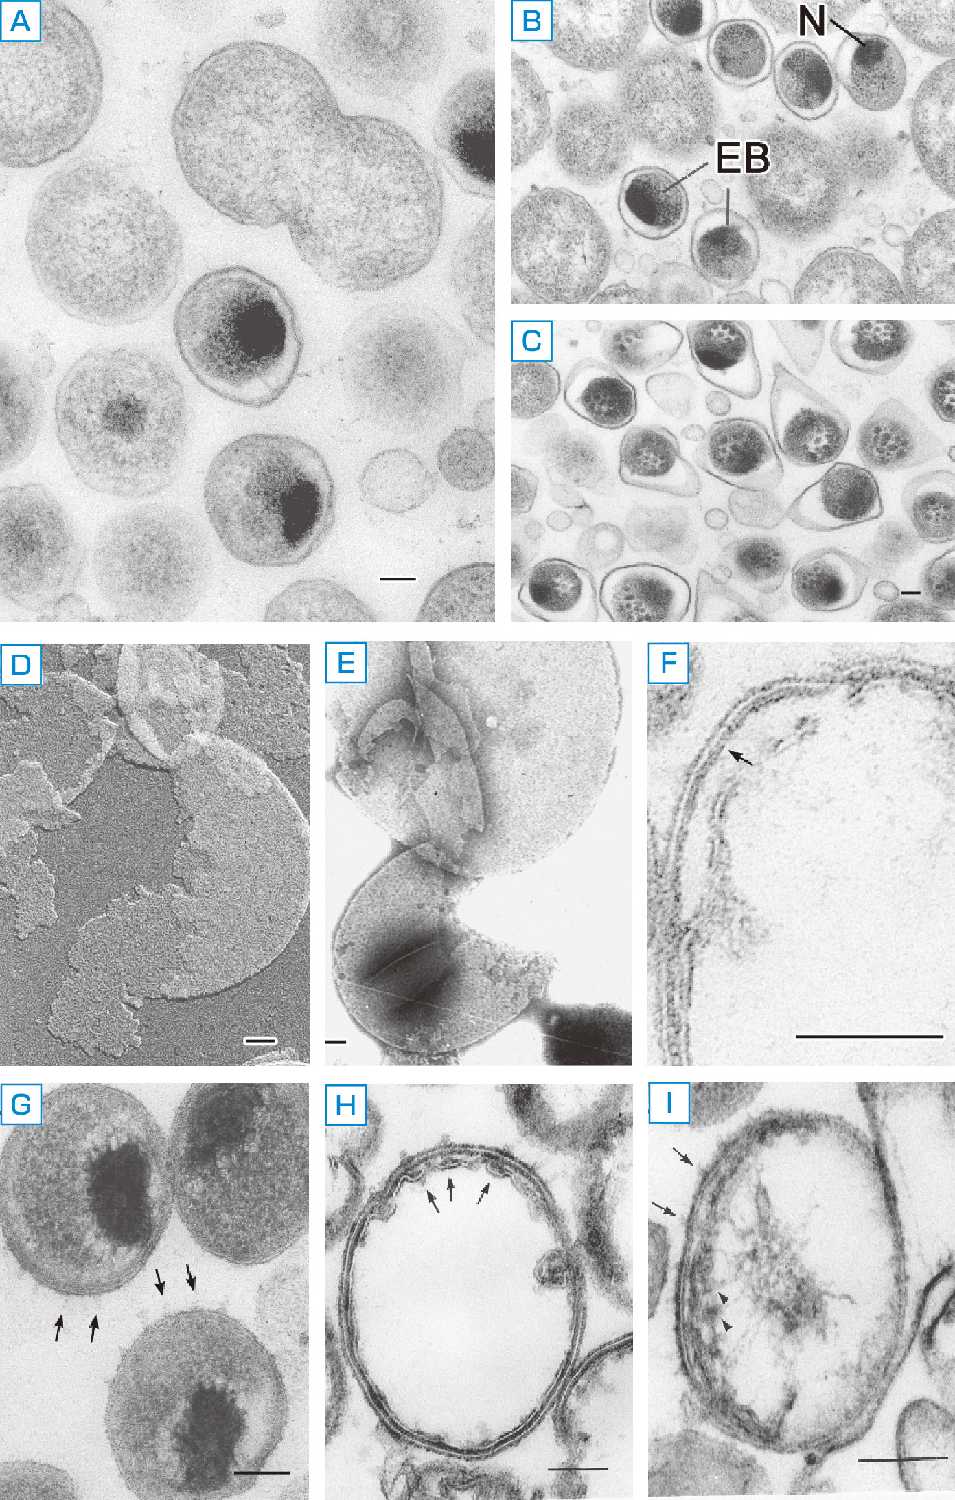 ⓔ図7-7-2　Chlamidophila pneumoniae菌体 クラミジア菌体の切片像 (A～C) と基本小体外膜のシャドウイング像 (D)，ネガティブ染色像 (E, F)．G～I：クラミジア菌体をルテニウム赤で増コントラスト処理した． スケールバーは0.1μm．基本小体外膜のシャドウイング像，ネガティブ染色像では六角網目状規則配列が染色液の浸透により外膜全体に認められる．矢印は表面突起を示す (G, I)．DNAが突起の部分に伸長している (Iの矢頭)．EB: elementary body (基本小体)，N: nucleus (核)